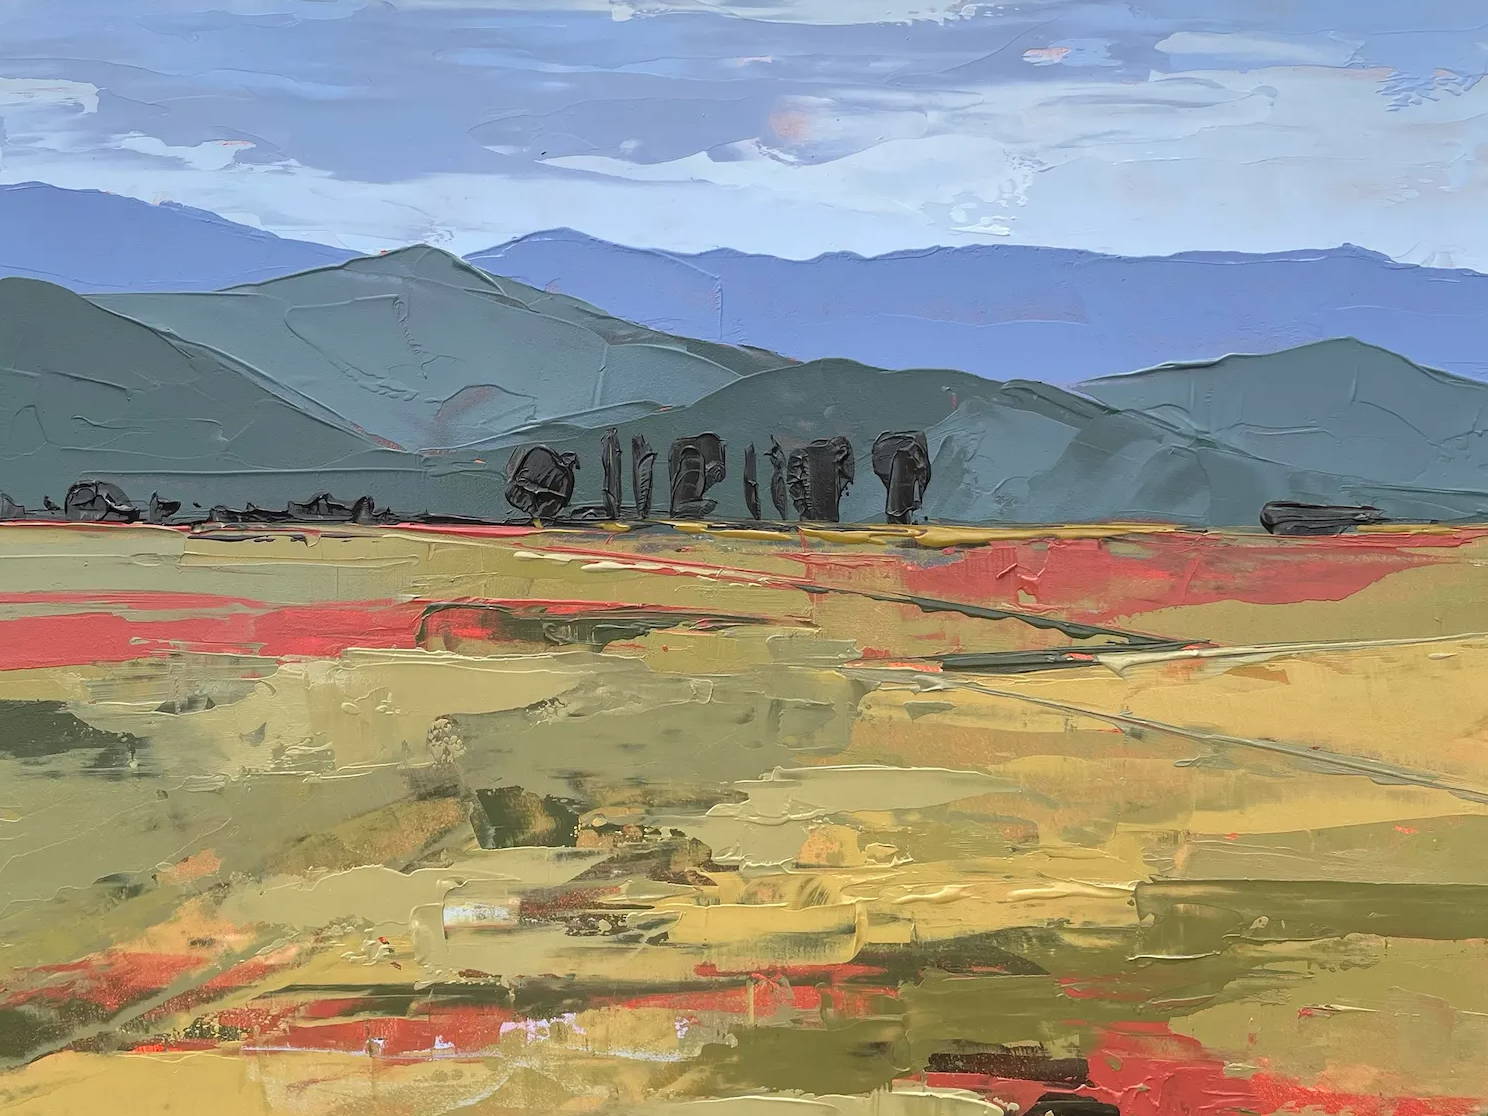 Hadley Rampton. David Yarrow. Sorrel Sky Gallery. Santa Fe Art Gallery. 